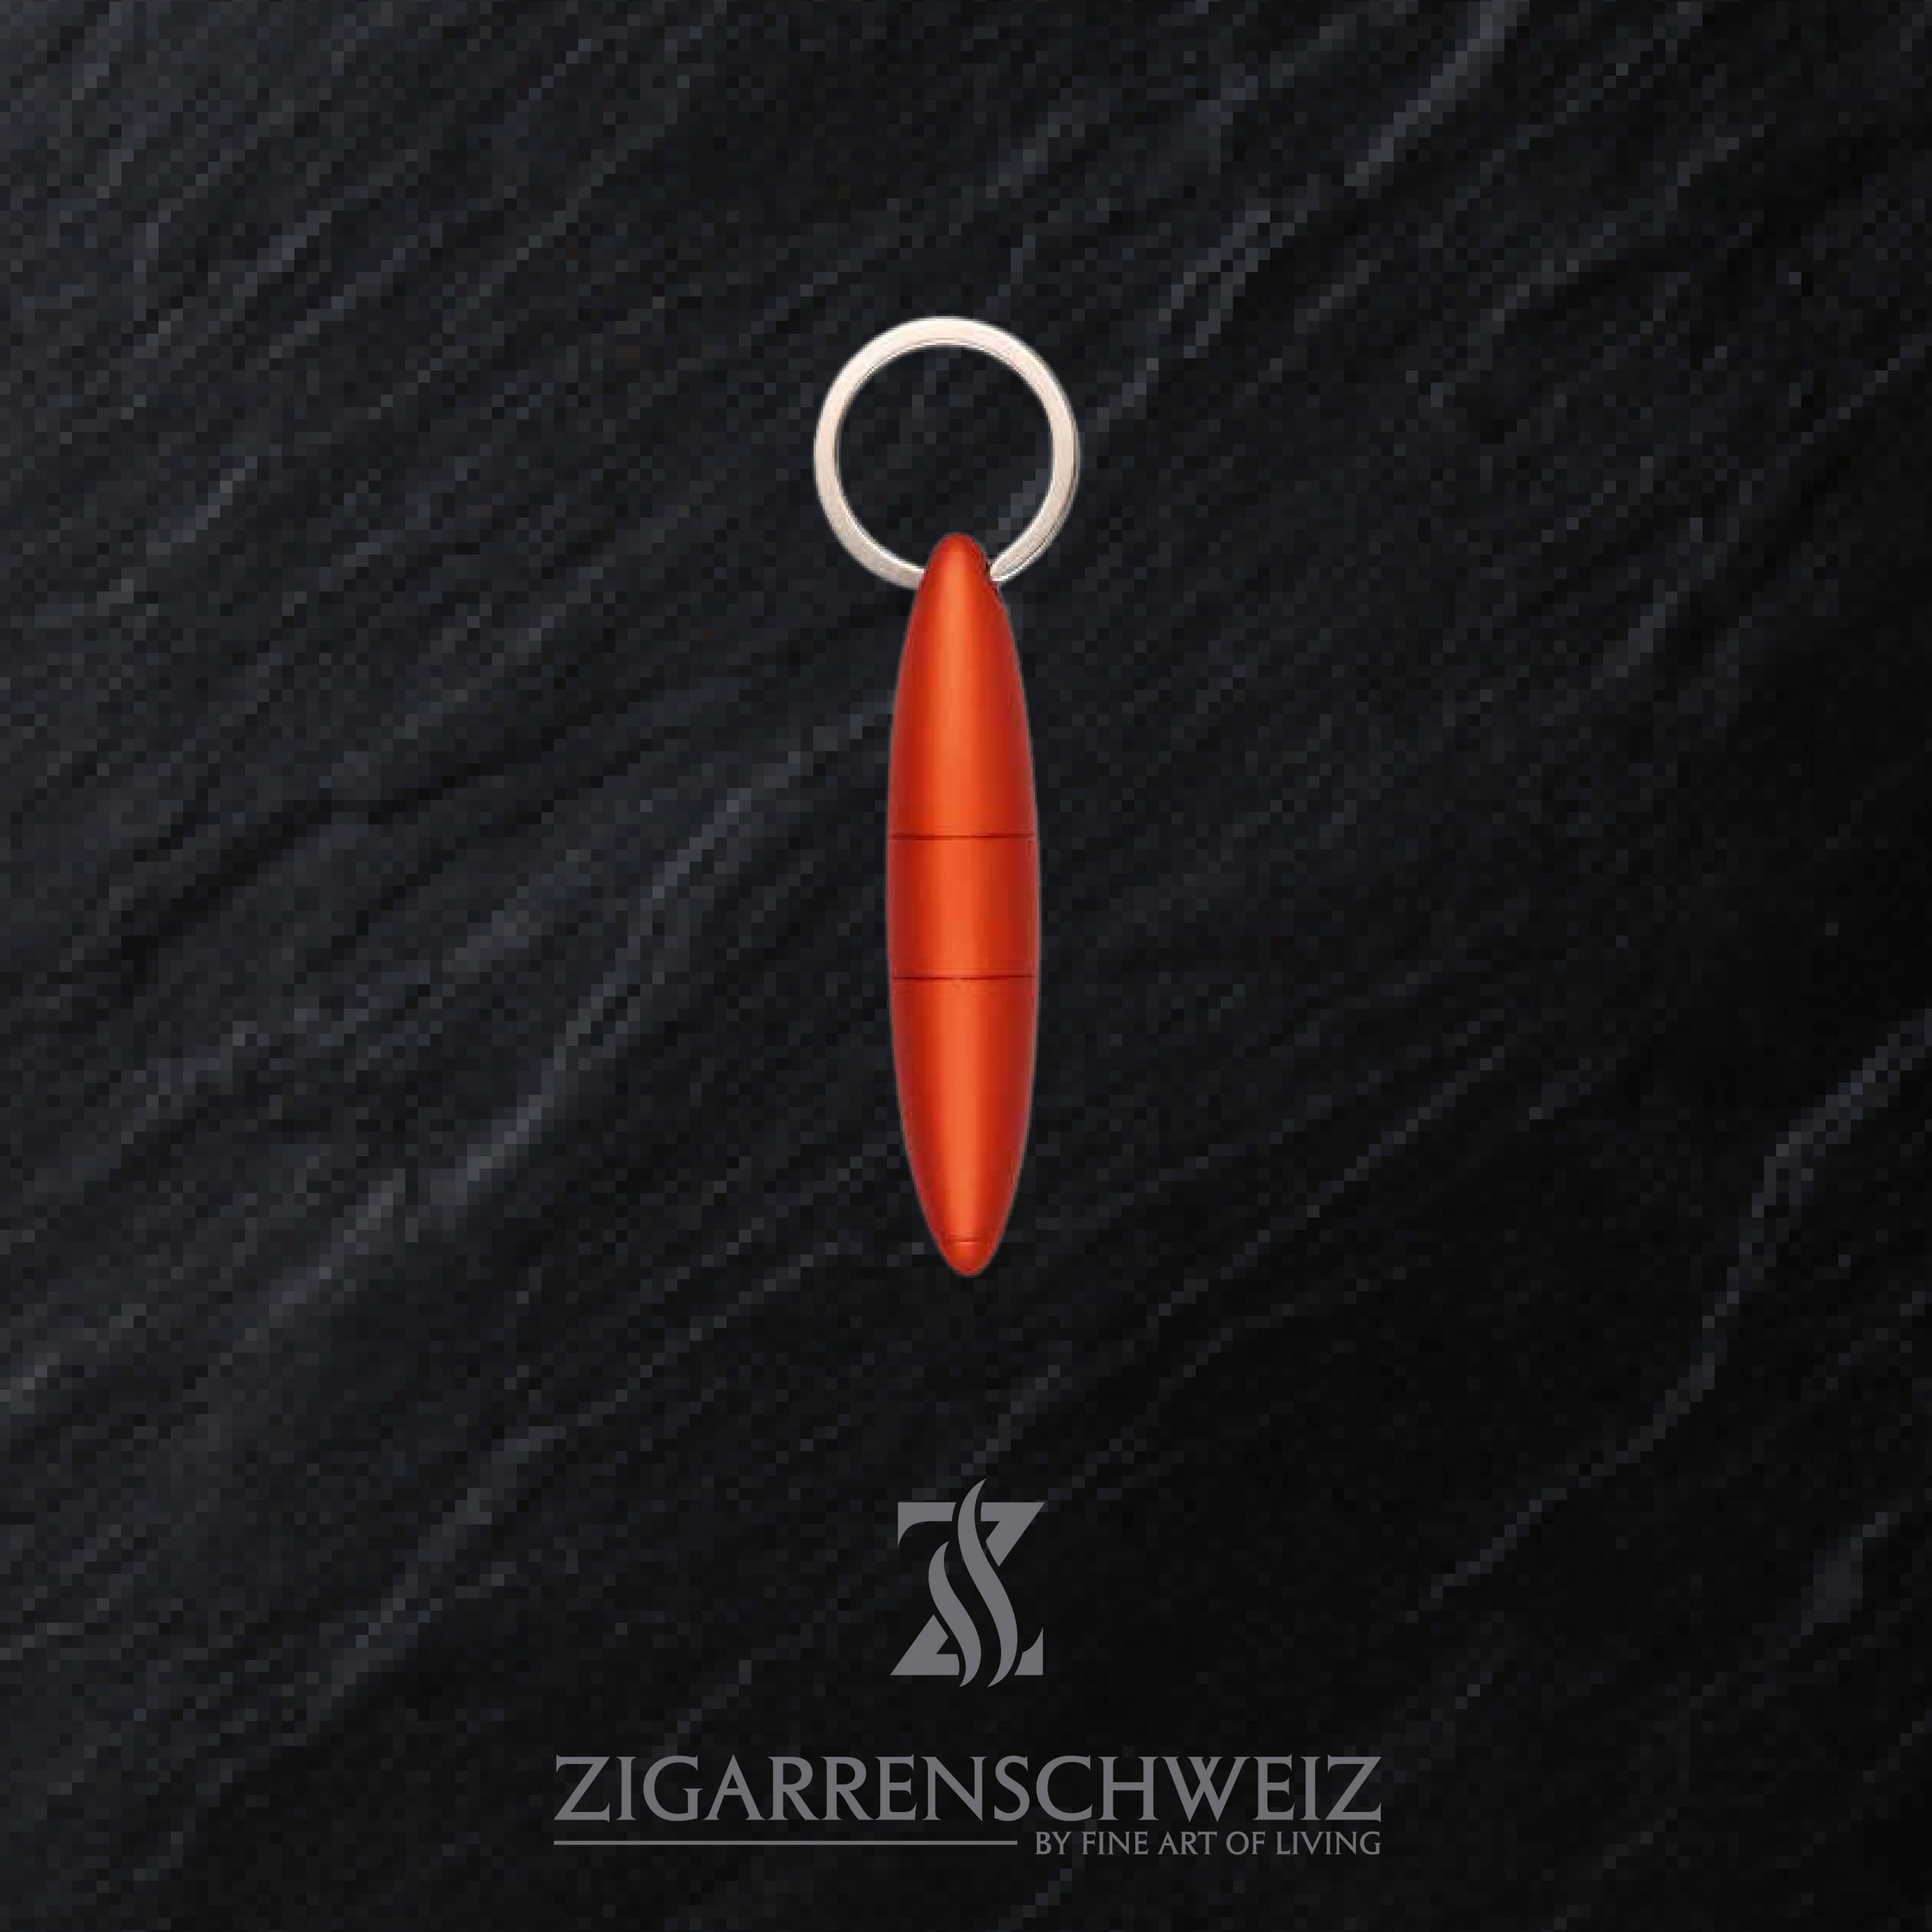 Passatore Zigarren Puncher und Zigarren Bohrer, praktischer Schlüsselanhänger, zwei in eins, Farbe: Rot metallisiert